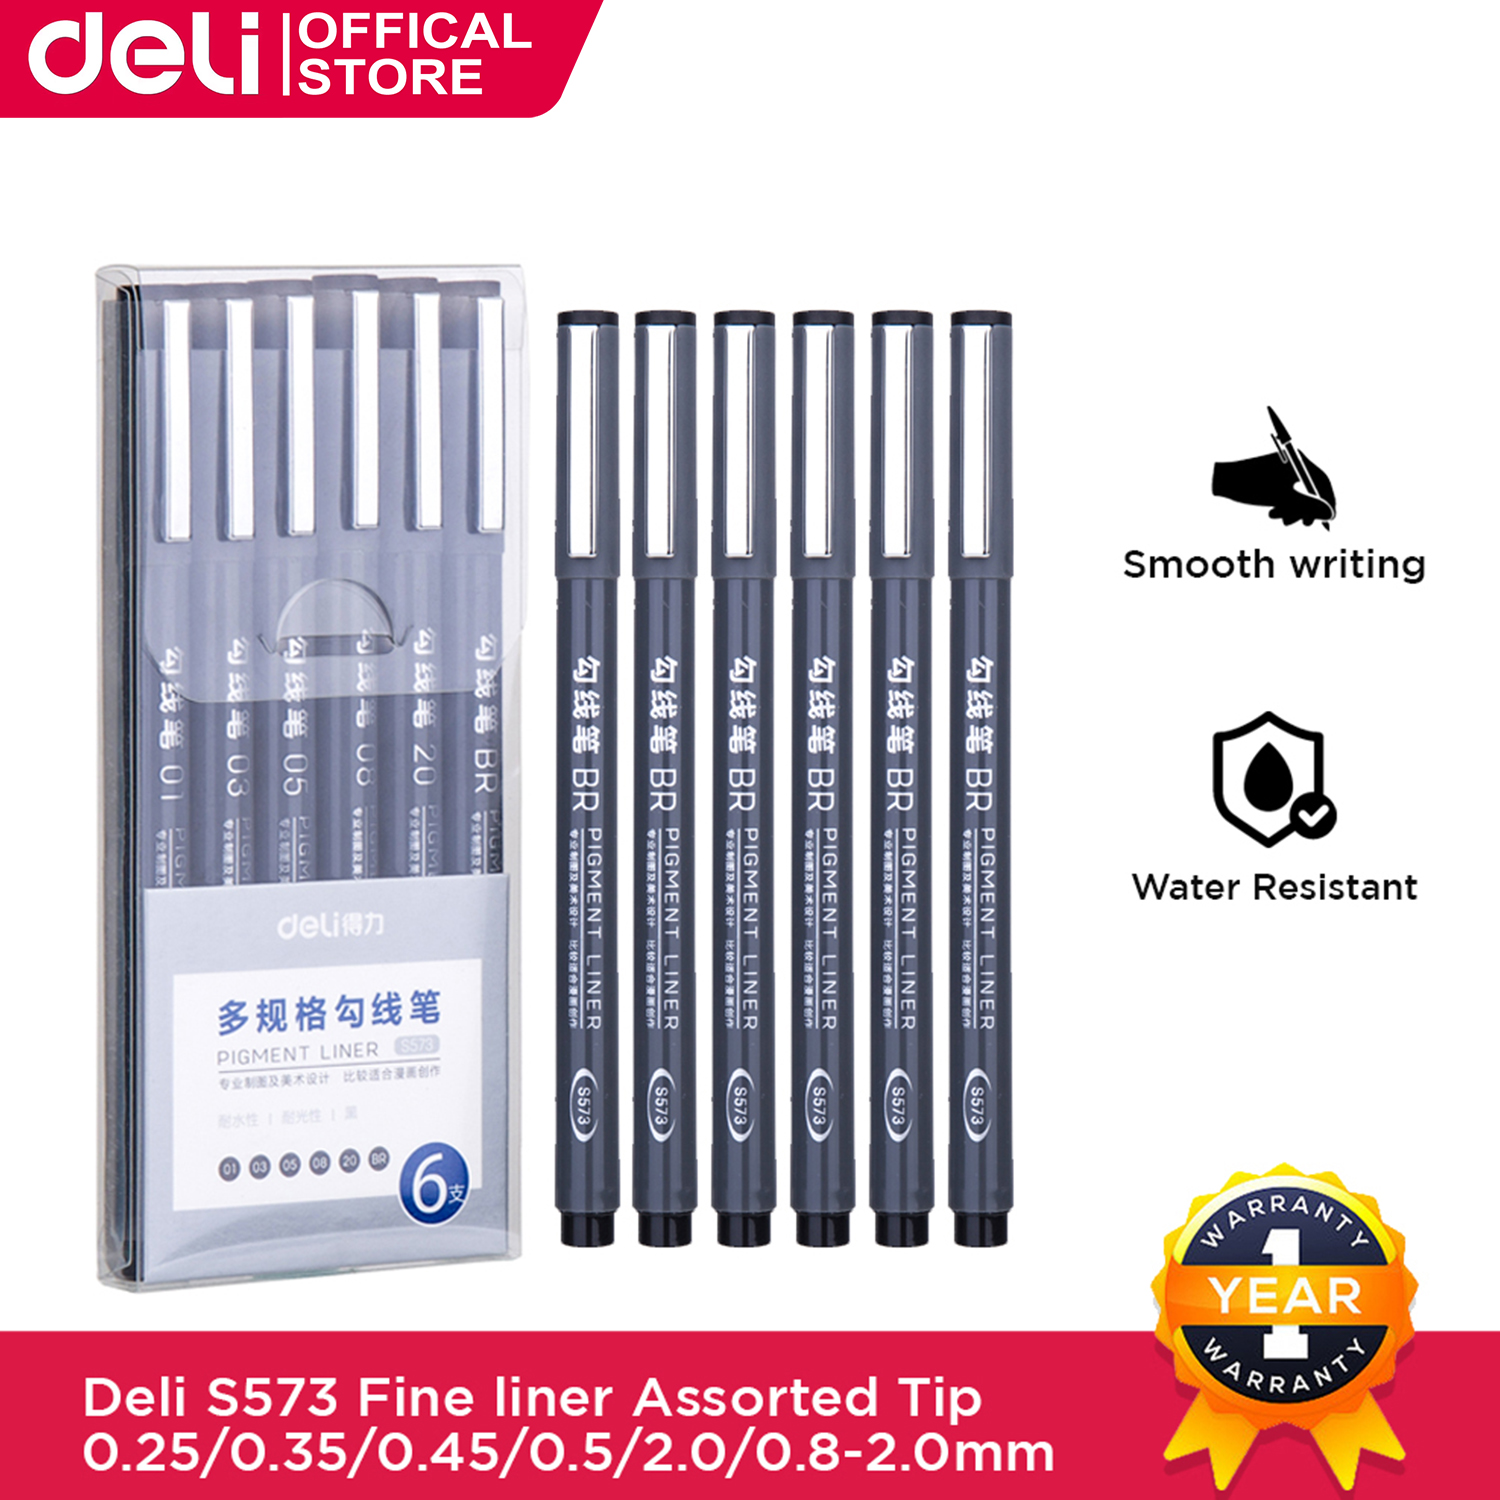 Deli-3933 Laser Pen - Deli Group Co., Ltd.